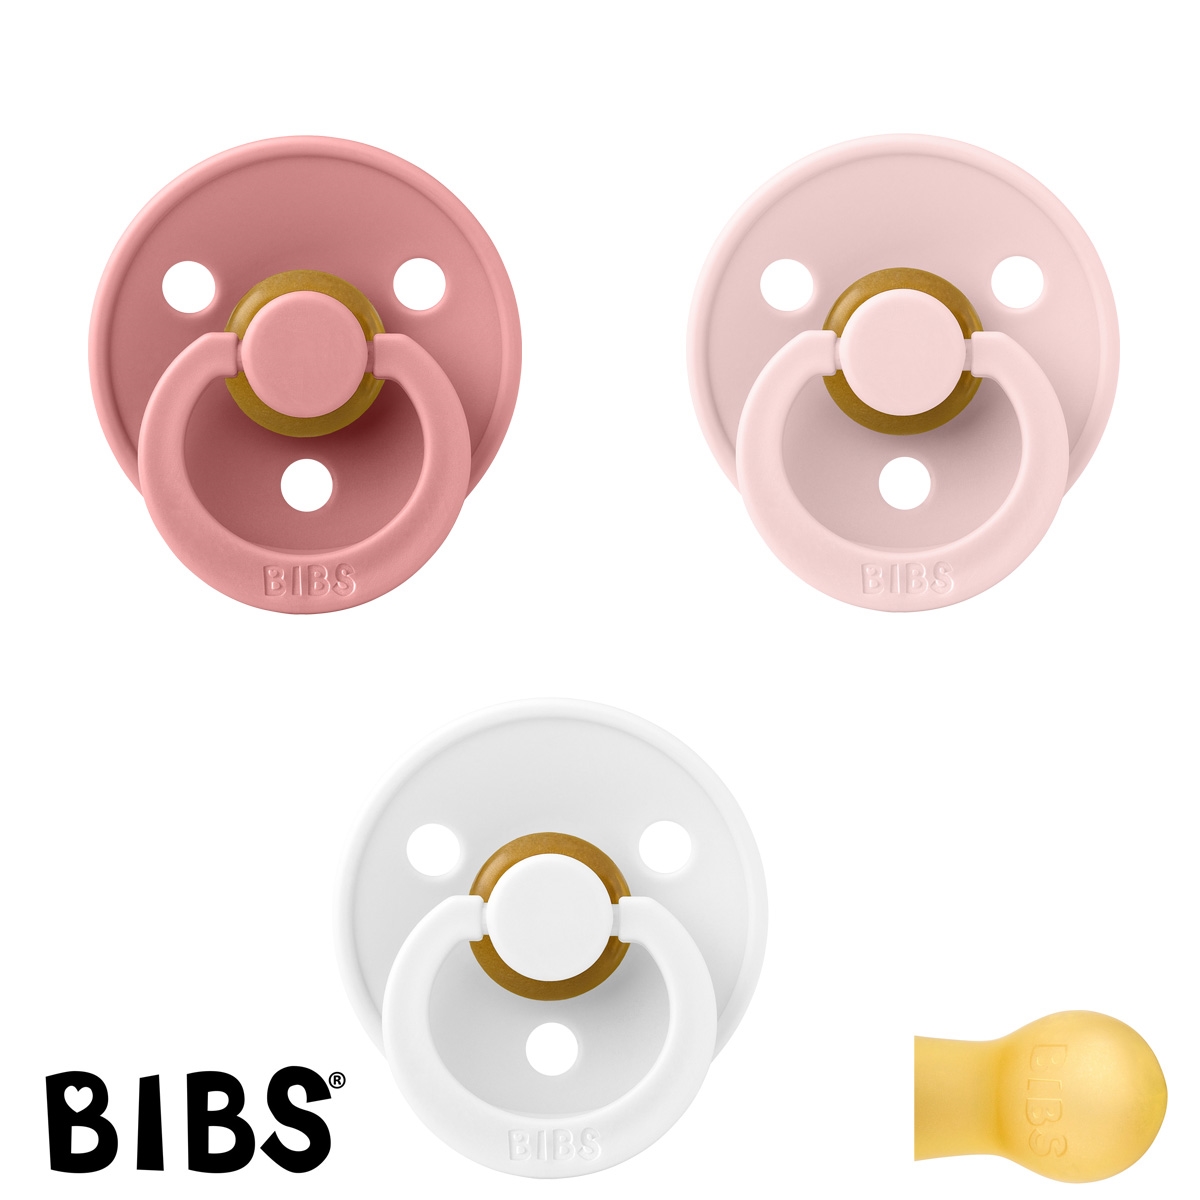 BIBS Colour Schnuller mit Namen, Gr. 1, White, Dusty Pink, Blossom, Rund Latex, (3er Pack)